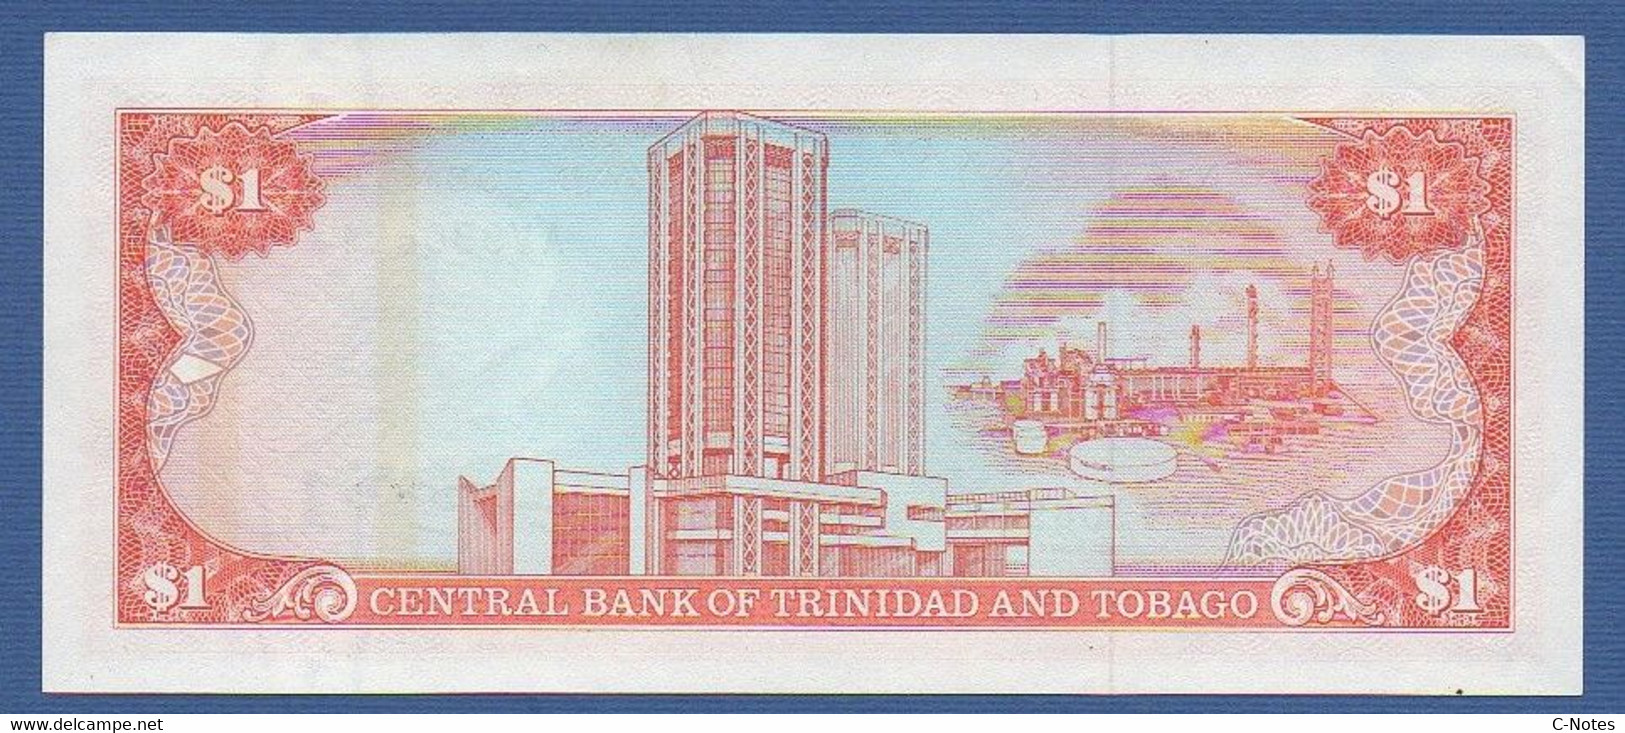 TRINIDAD & TOBAGO - P.36a – 1 Dollar ND (1985) "Chap. 79.02 - Arms" Issue UNC, Serie AV990891 - Trindad & Tobago